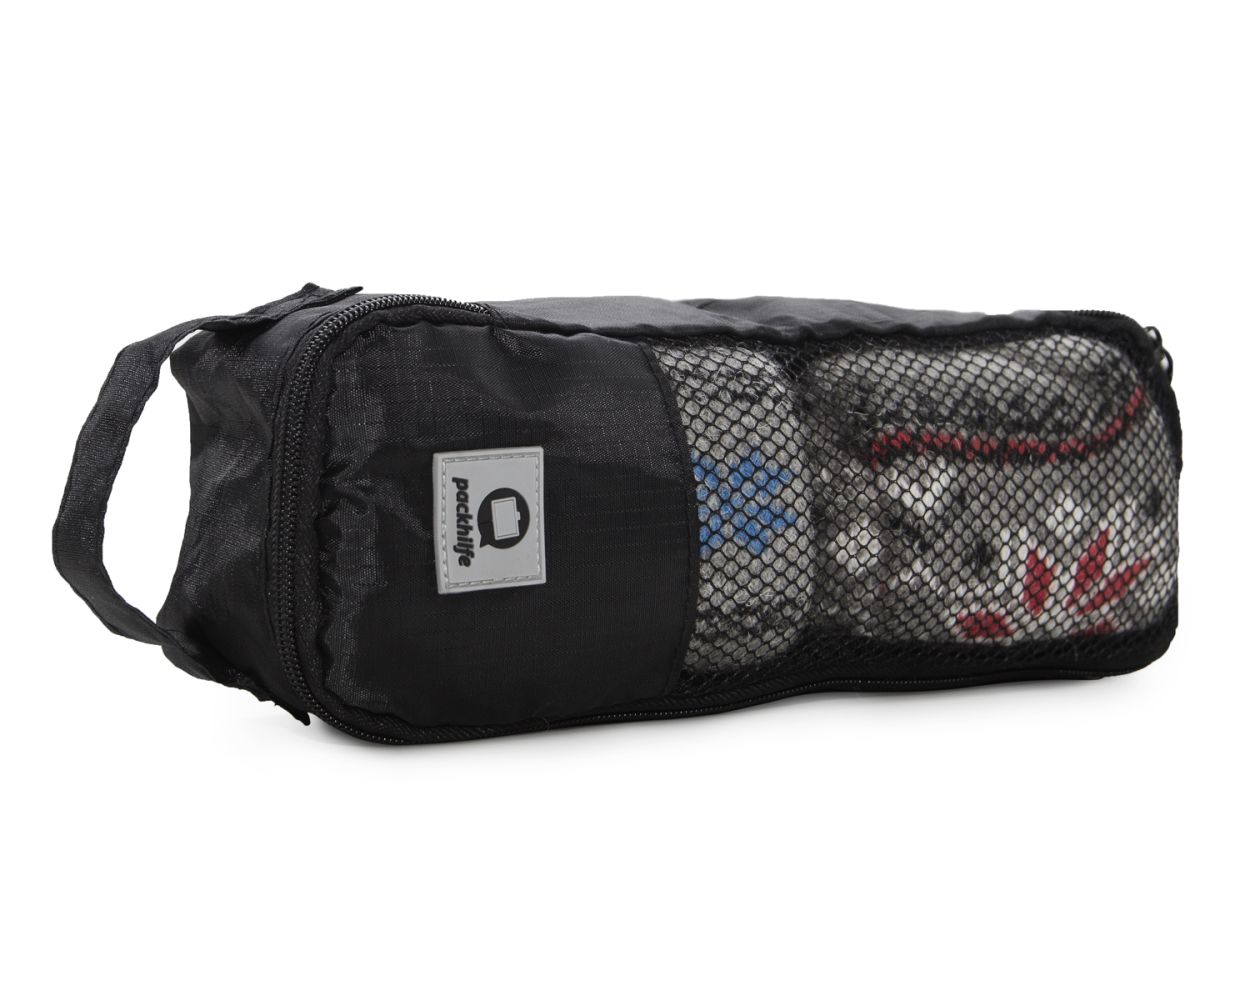 Rojeam Koffer Organizer Set 6-teilig Reisetasche in Koffer Wäschebeutel Aufbewahrungstasche Kleidertaschen Gepäck Aufbewahrung Taschen Rotes Leopardkorn